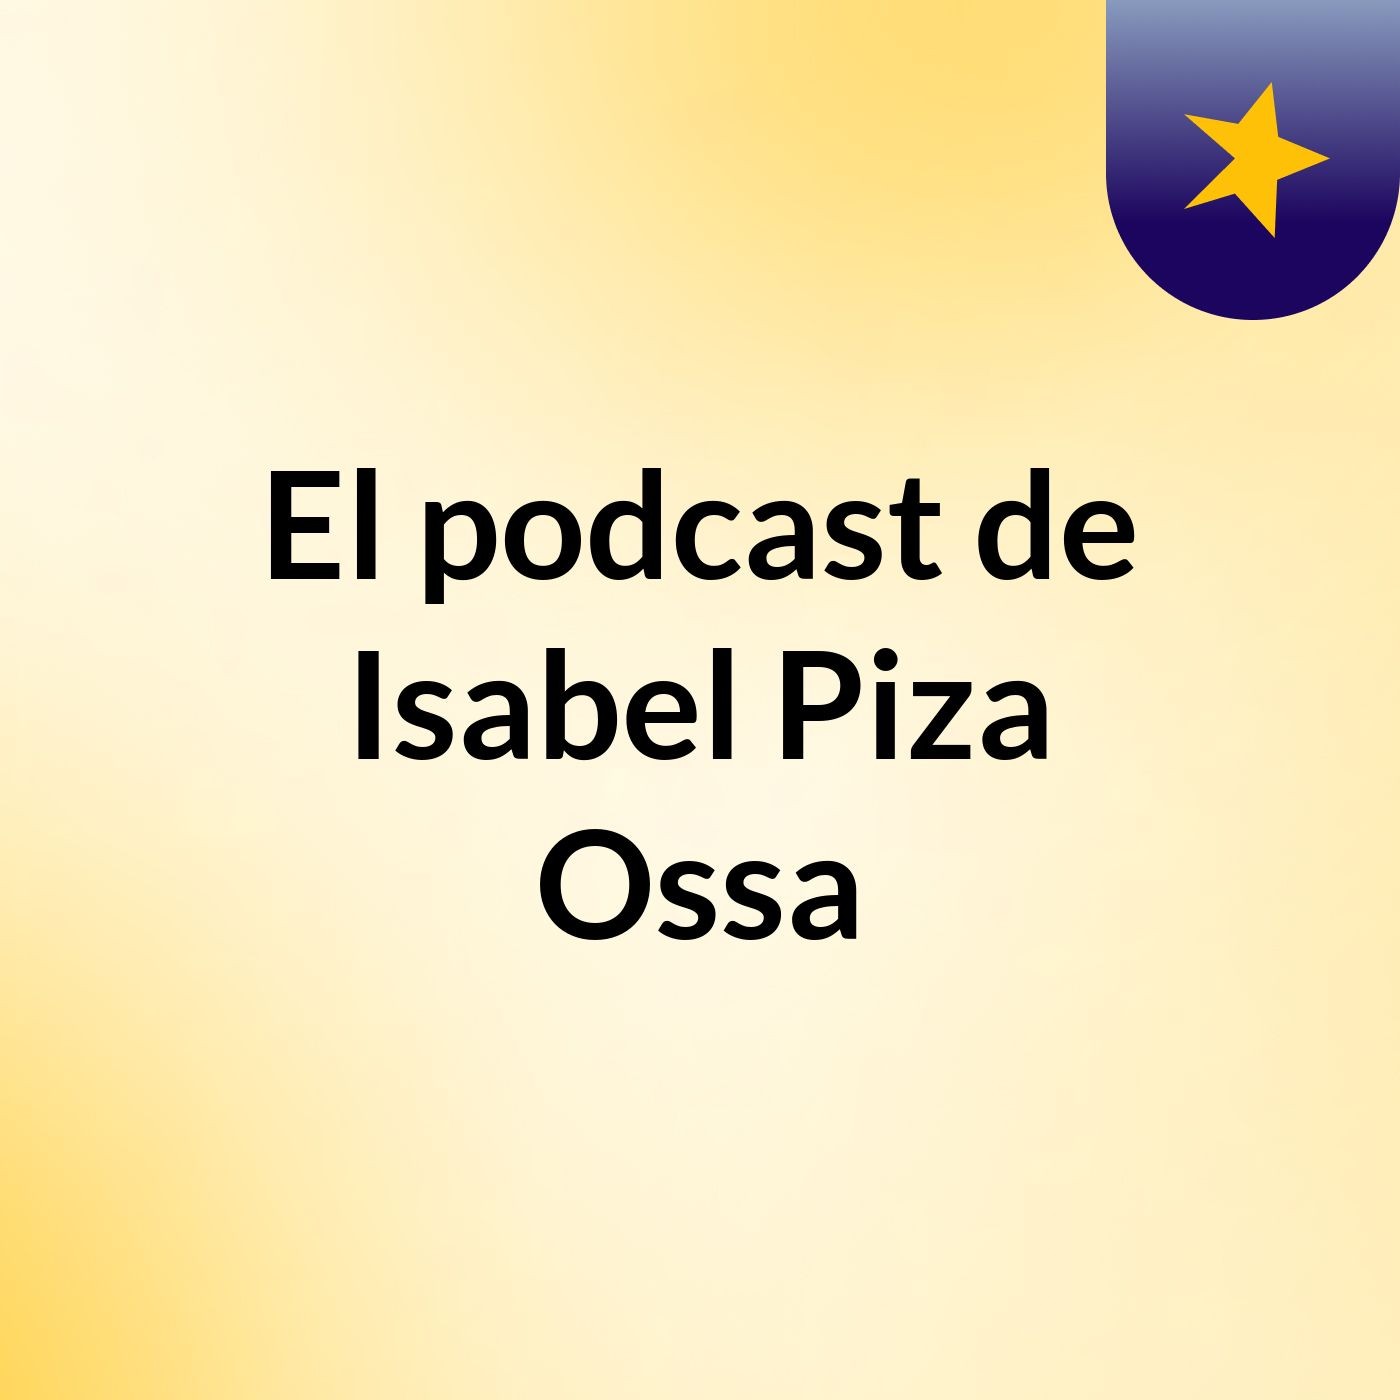 El podcast de Isabel Piza Ossa